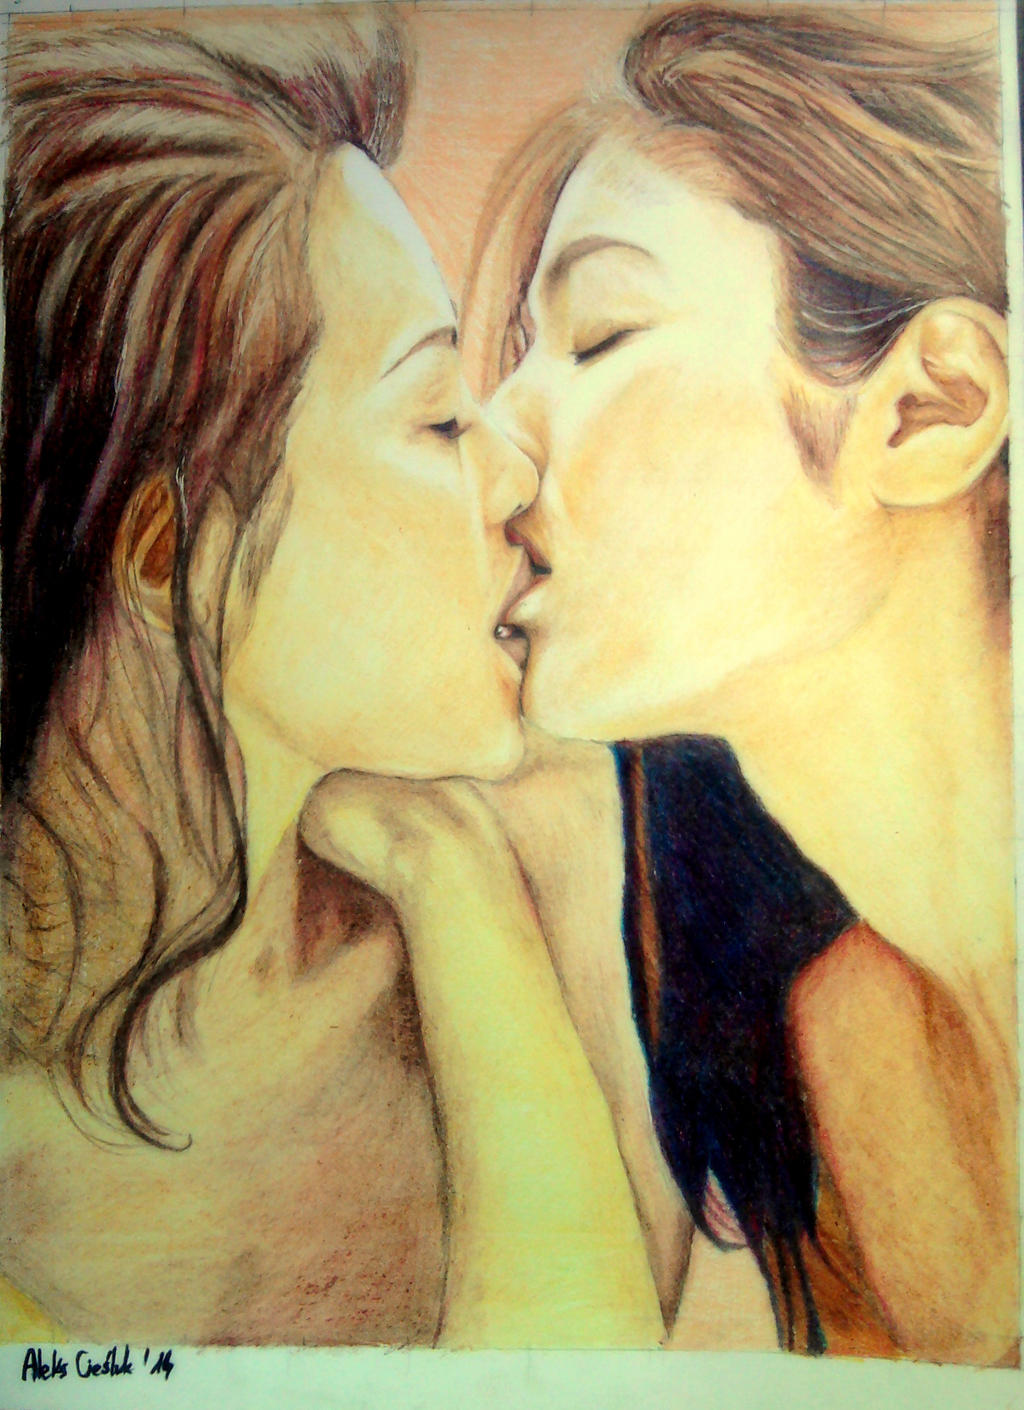 Japanese lesbian kissing